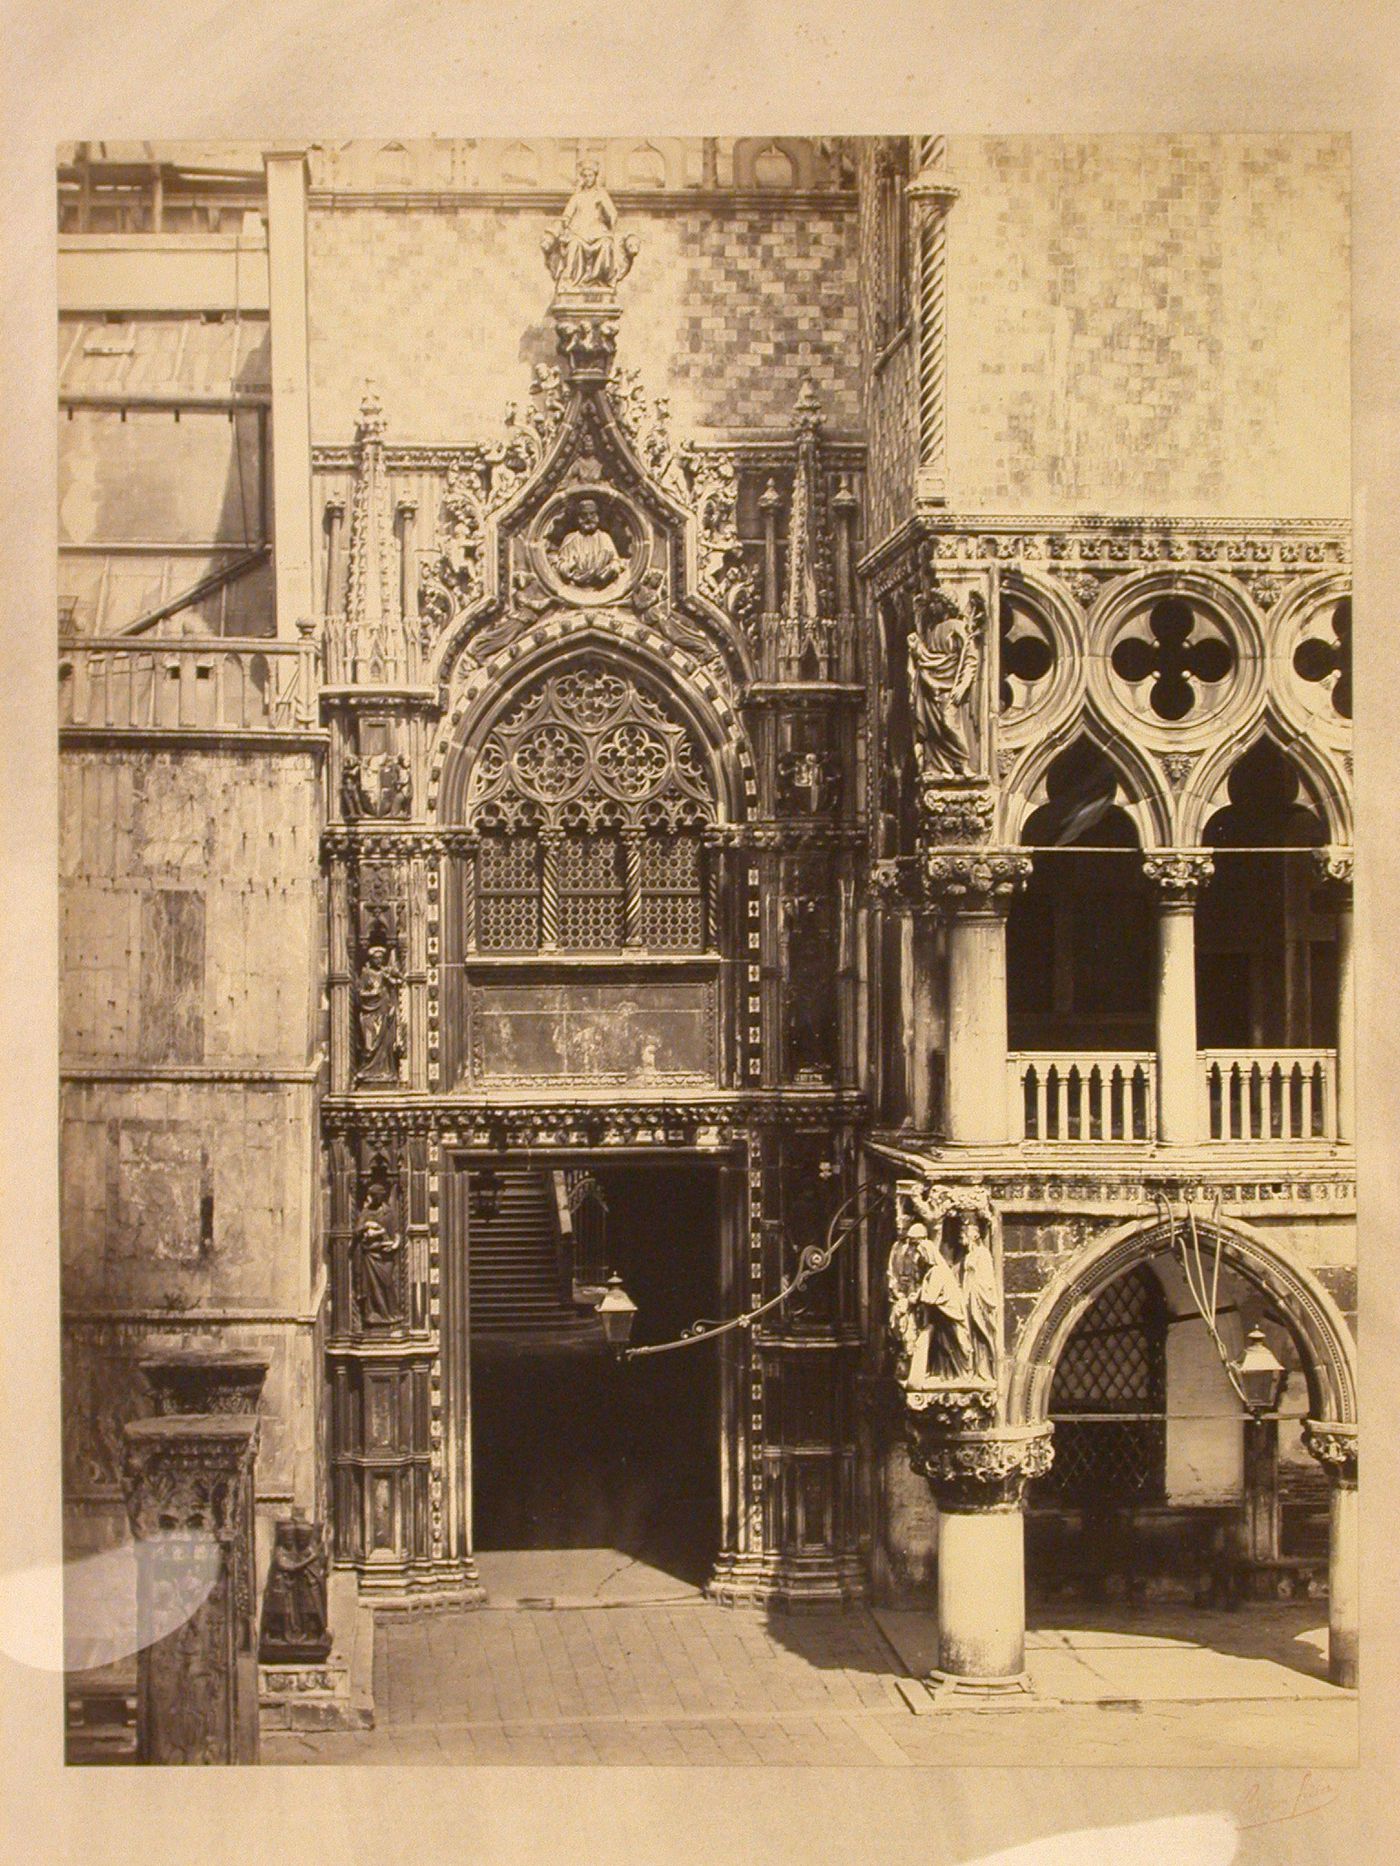 View of porta della carta, Palazzo Ducale, Venice, Italy